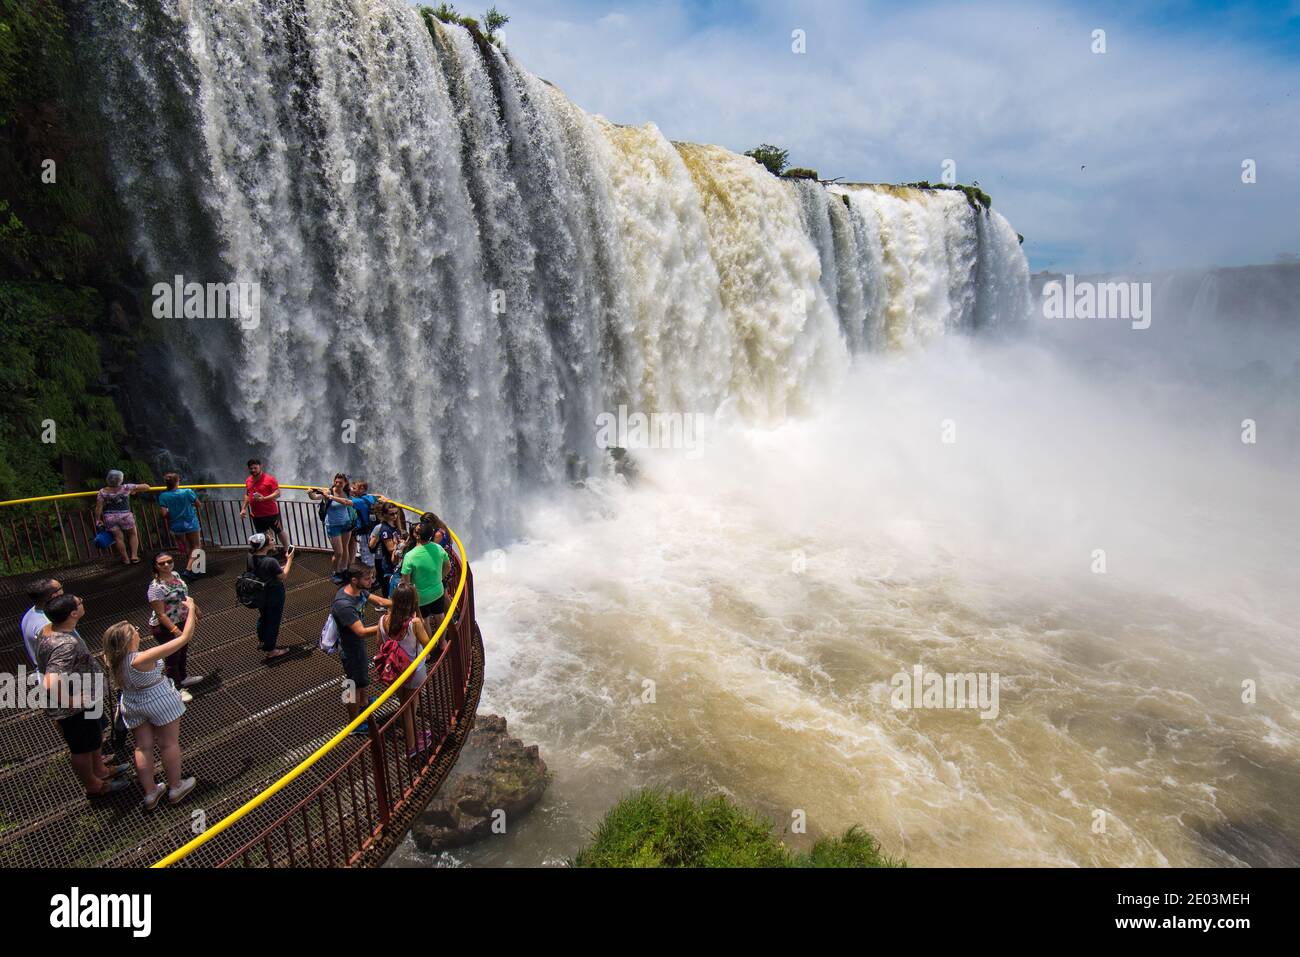 Foz do Iguacu, Parana, Brasilien - 27. November 2018: Touristen bewundern eines der neuen Sieben Wunder der Natur - die Iguazu Wasserfälle, an der Grenze zu Brasilien und Stockfoto